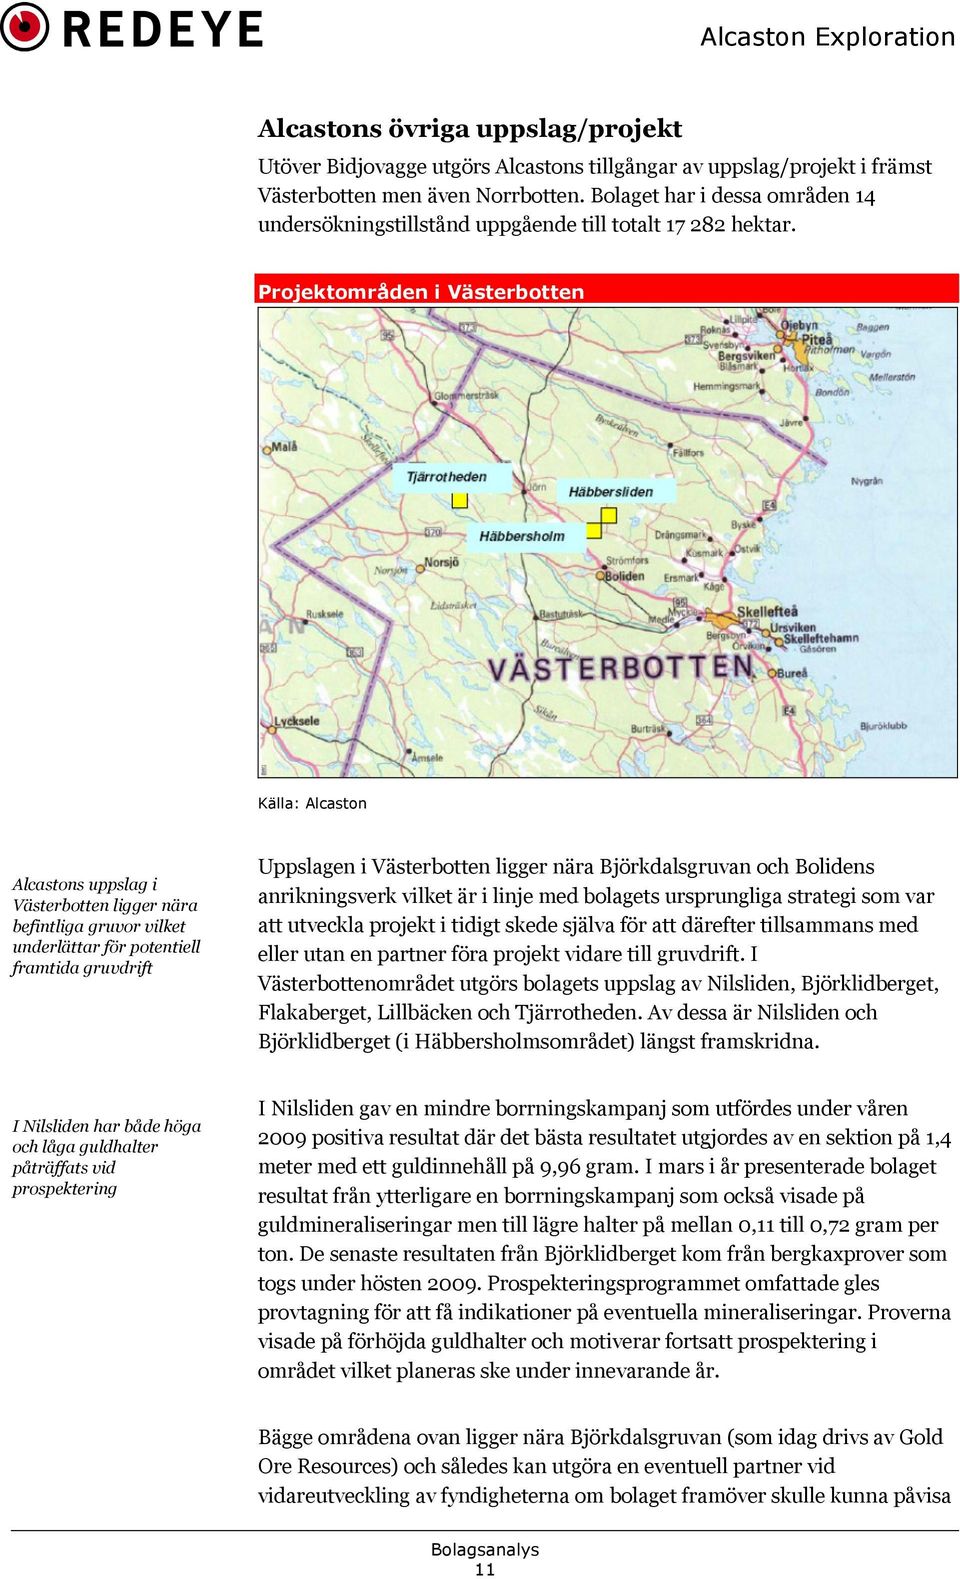 Projektområden i Västerbotten Källa: Alcaston Alcastons uppslag i Västerbotten ligger nära befintliga gruvor vilket underlättar för potentiell framtida gruvdrift Uppslagen i Västerbotten ligger nära